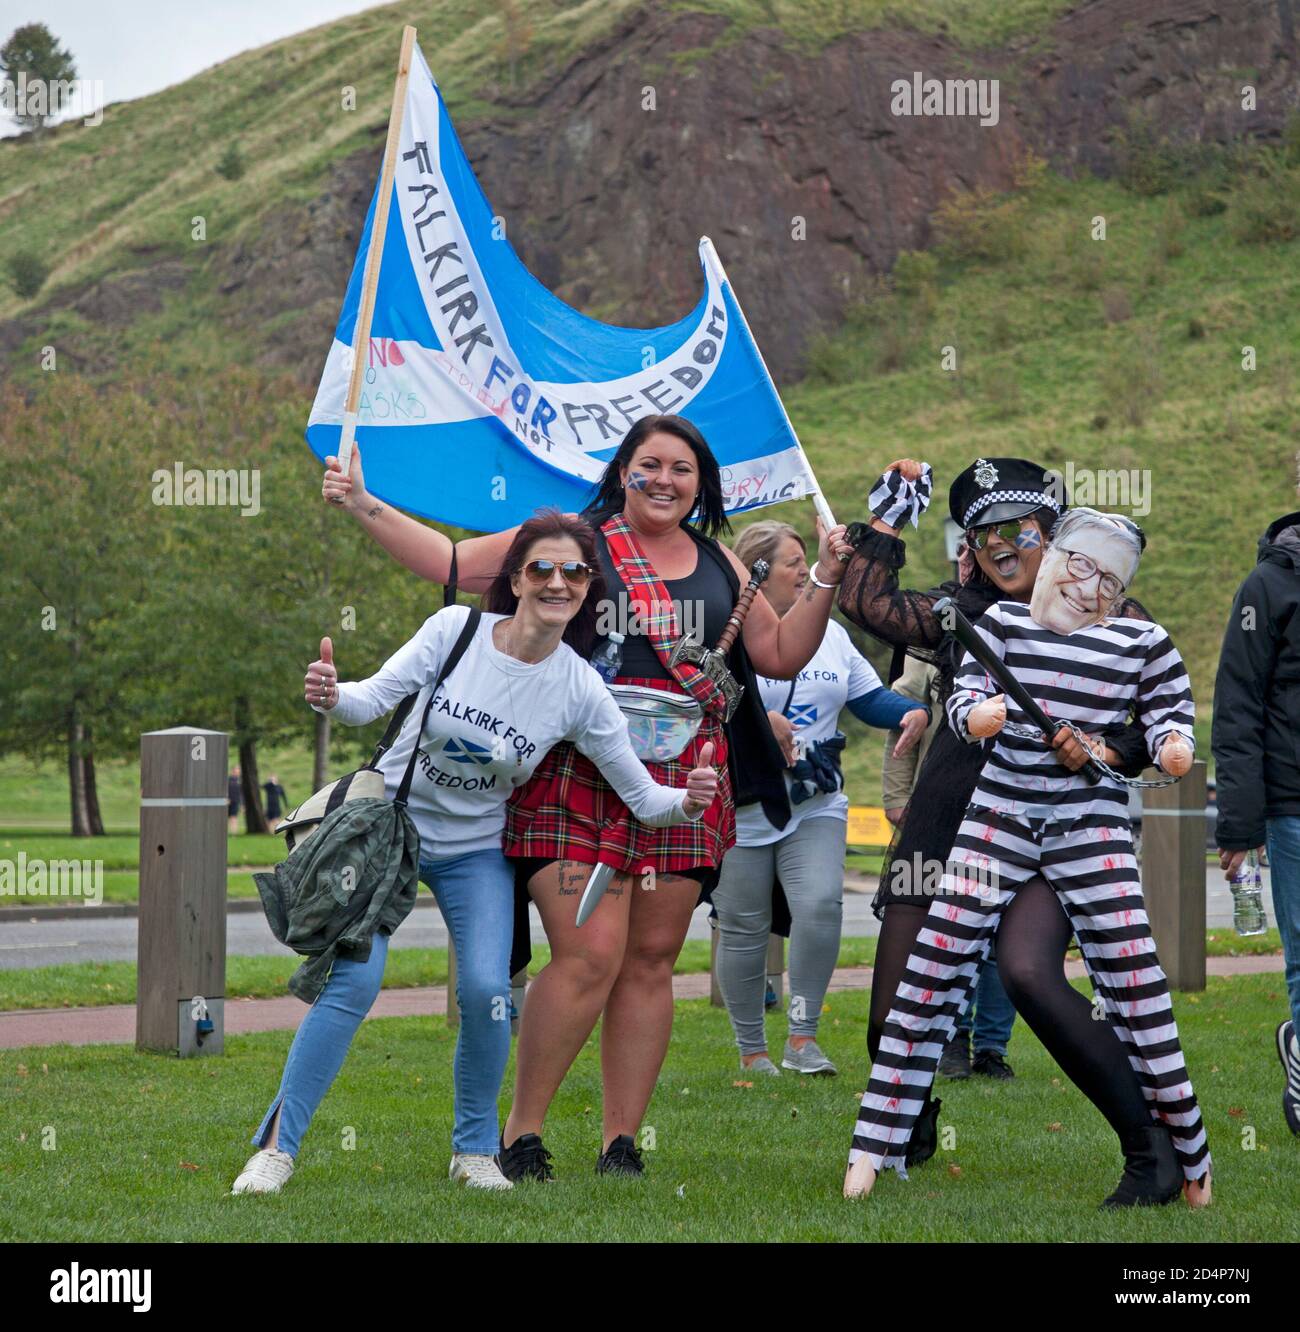 Demonstranten vor dem schottischen Parlament in Edinburgh, Schottland, Großbritannien. 10. Oktober 2020. Organisiert von Schottland gegen Lockdown, die das obligatorische Tragen von Gesichtsmasken für nicht notwendig halten und nicht mit dem Scottish & U.K Governments Coronavirus Act und Lockdown einverstanden sind. Quelle: Arch White/ Alamy Live News Stockfoto